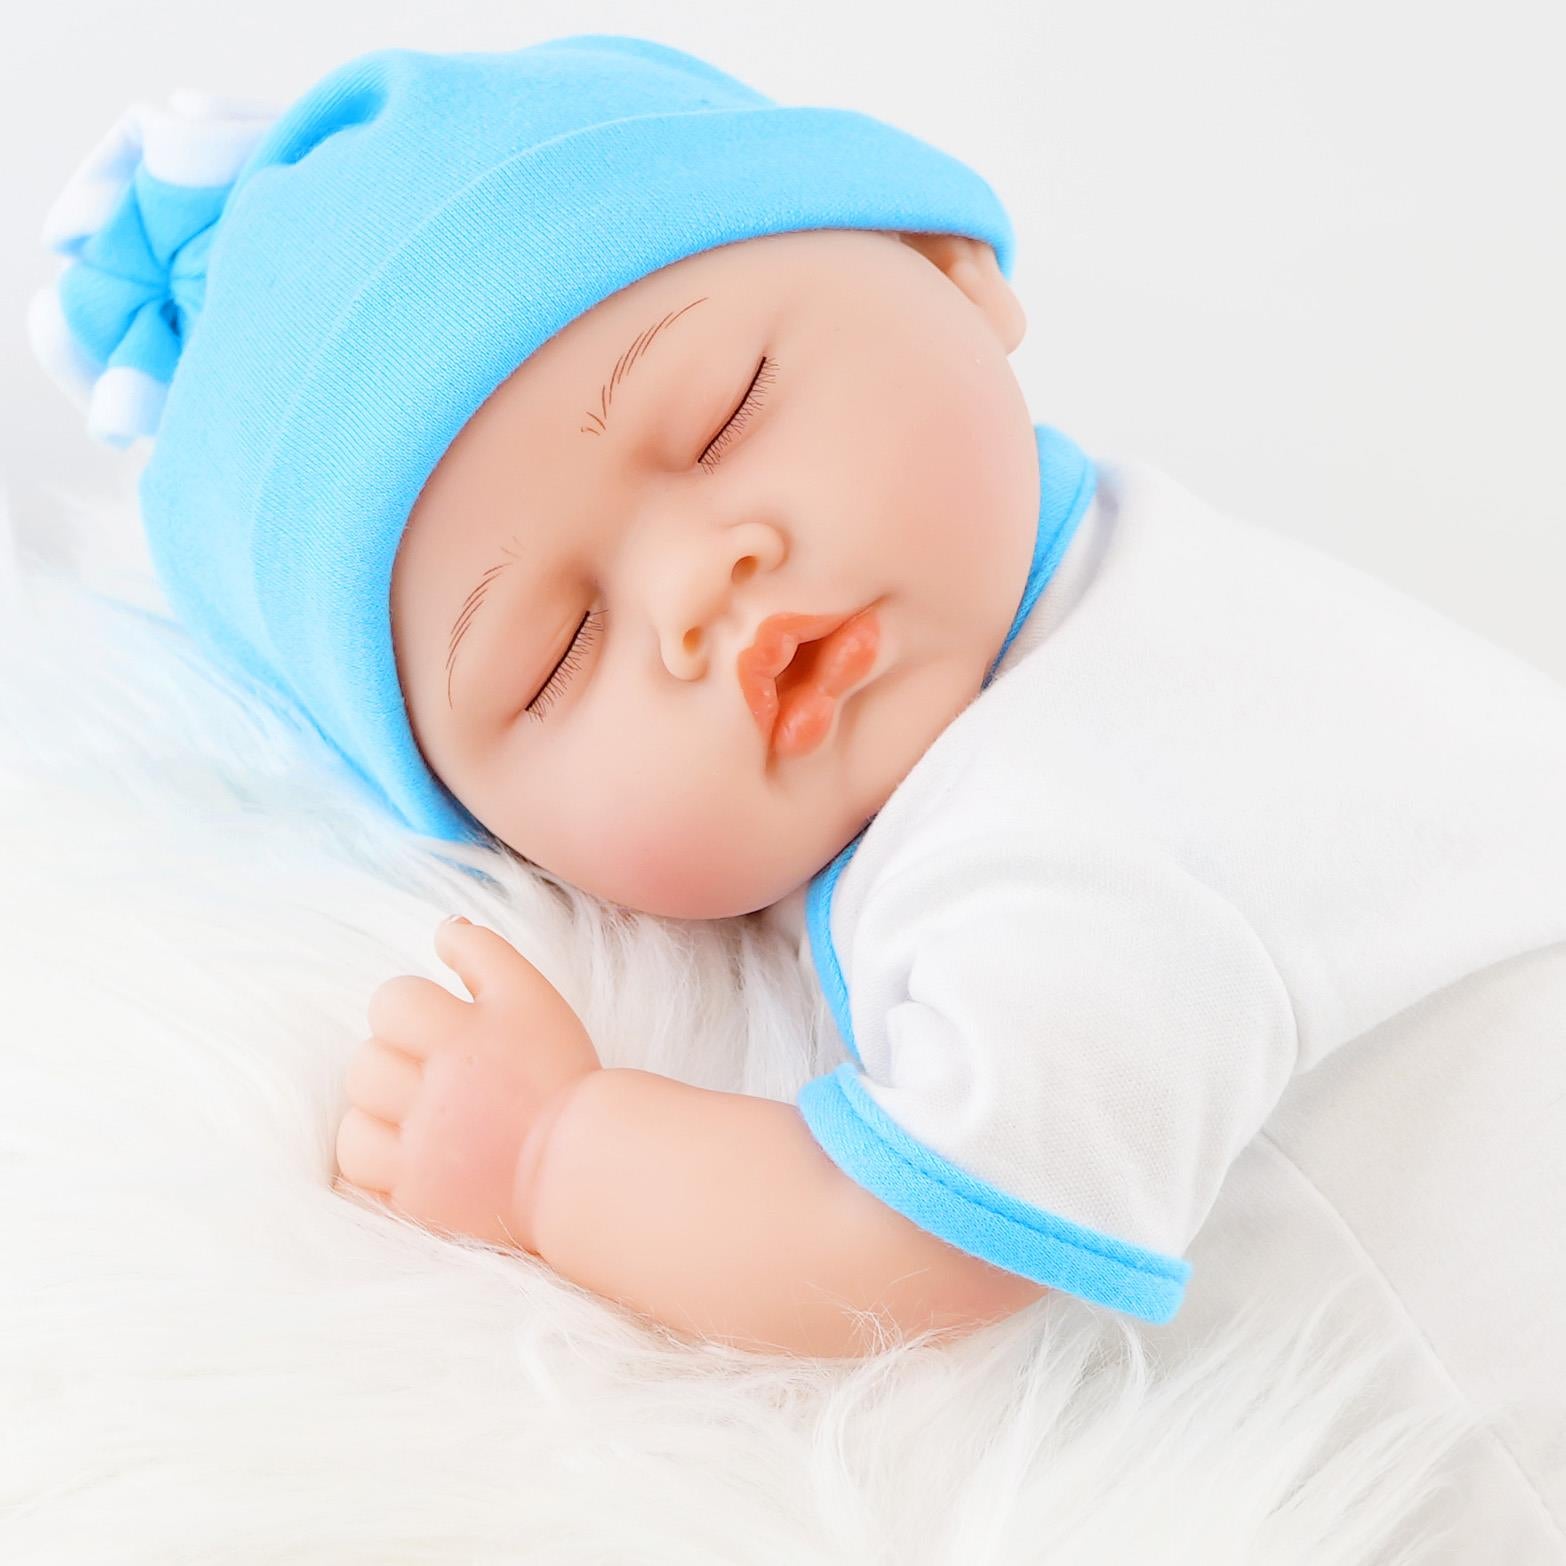 Lifelike Reborn Baby Sleeping Boy Doll 17" by BiBi Doll - The Magic Toy Shop